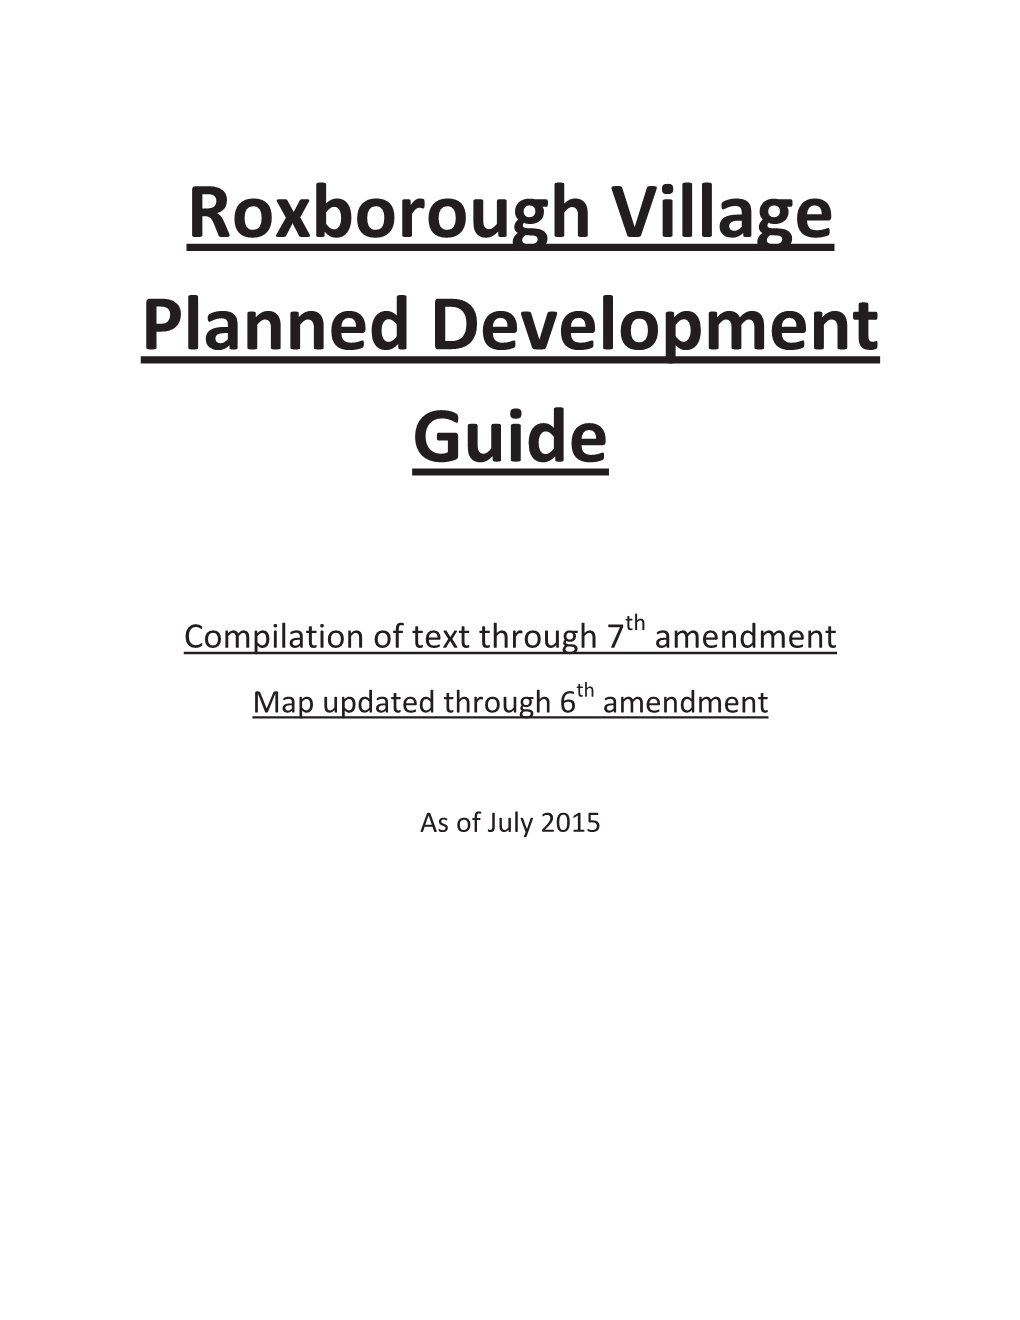 Roxborough Village Planned Development Guide